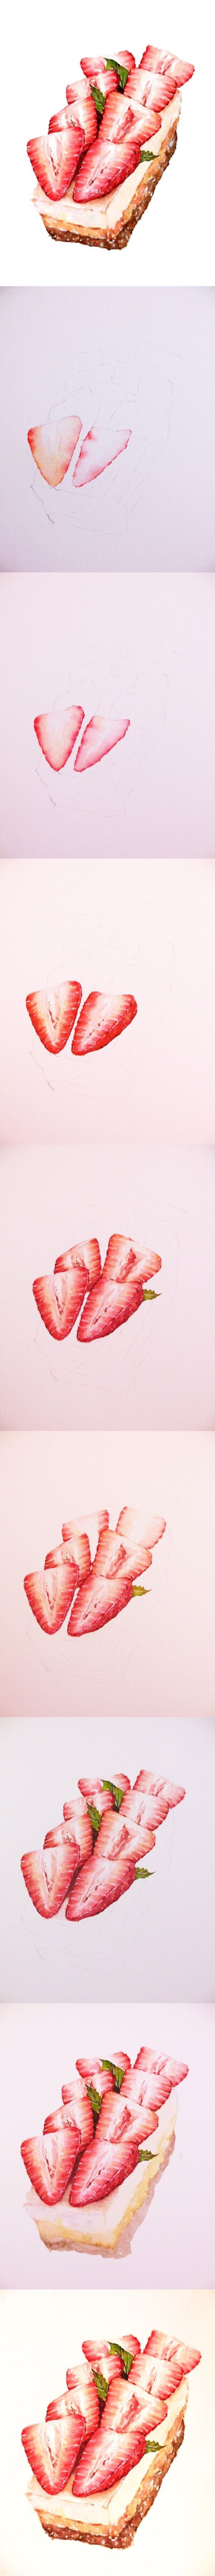 水彩 手绘 绘画 插画 原创 美食 草莓挞